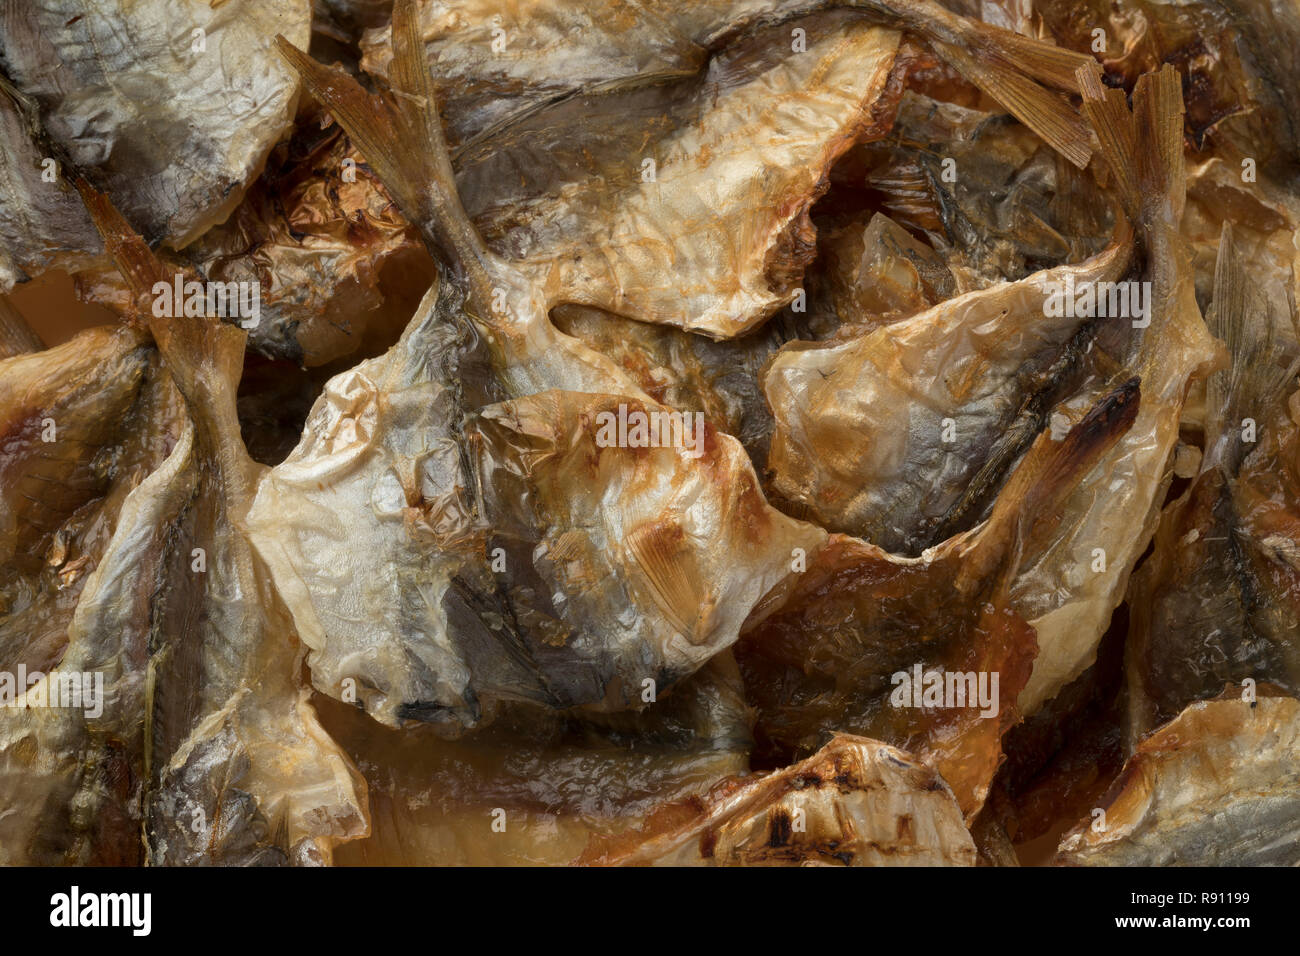 Japanische gegrillte Makrelen snack Close up full frame Stockfoto